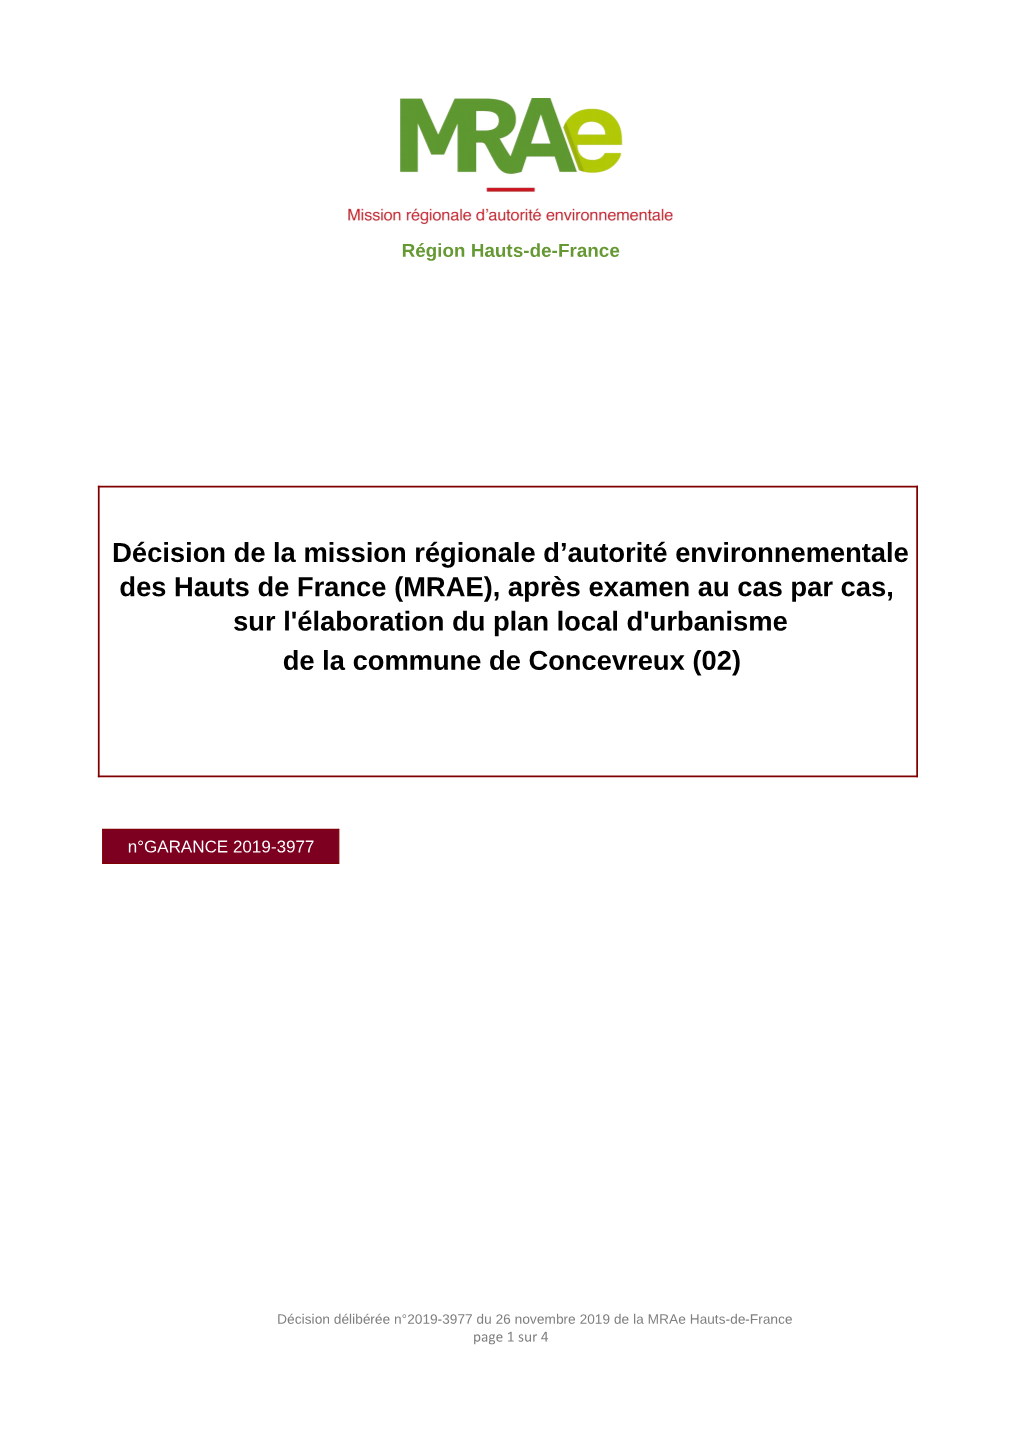 Décision De La Mission Régionale D'autorité Environnementale Des Hauts De France (MRAE), Après Examen Au Cas Par Cas